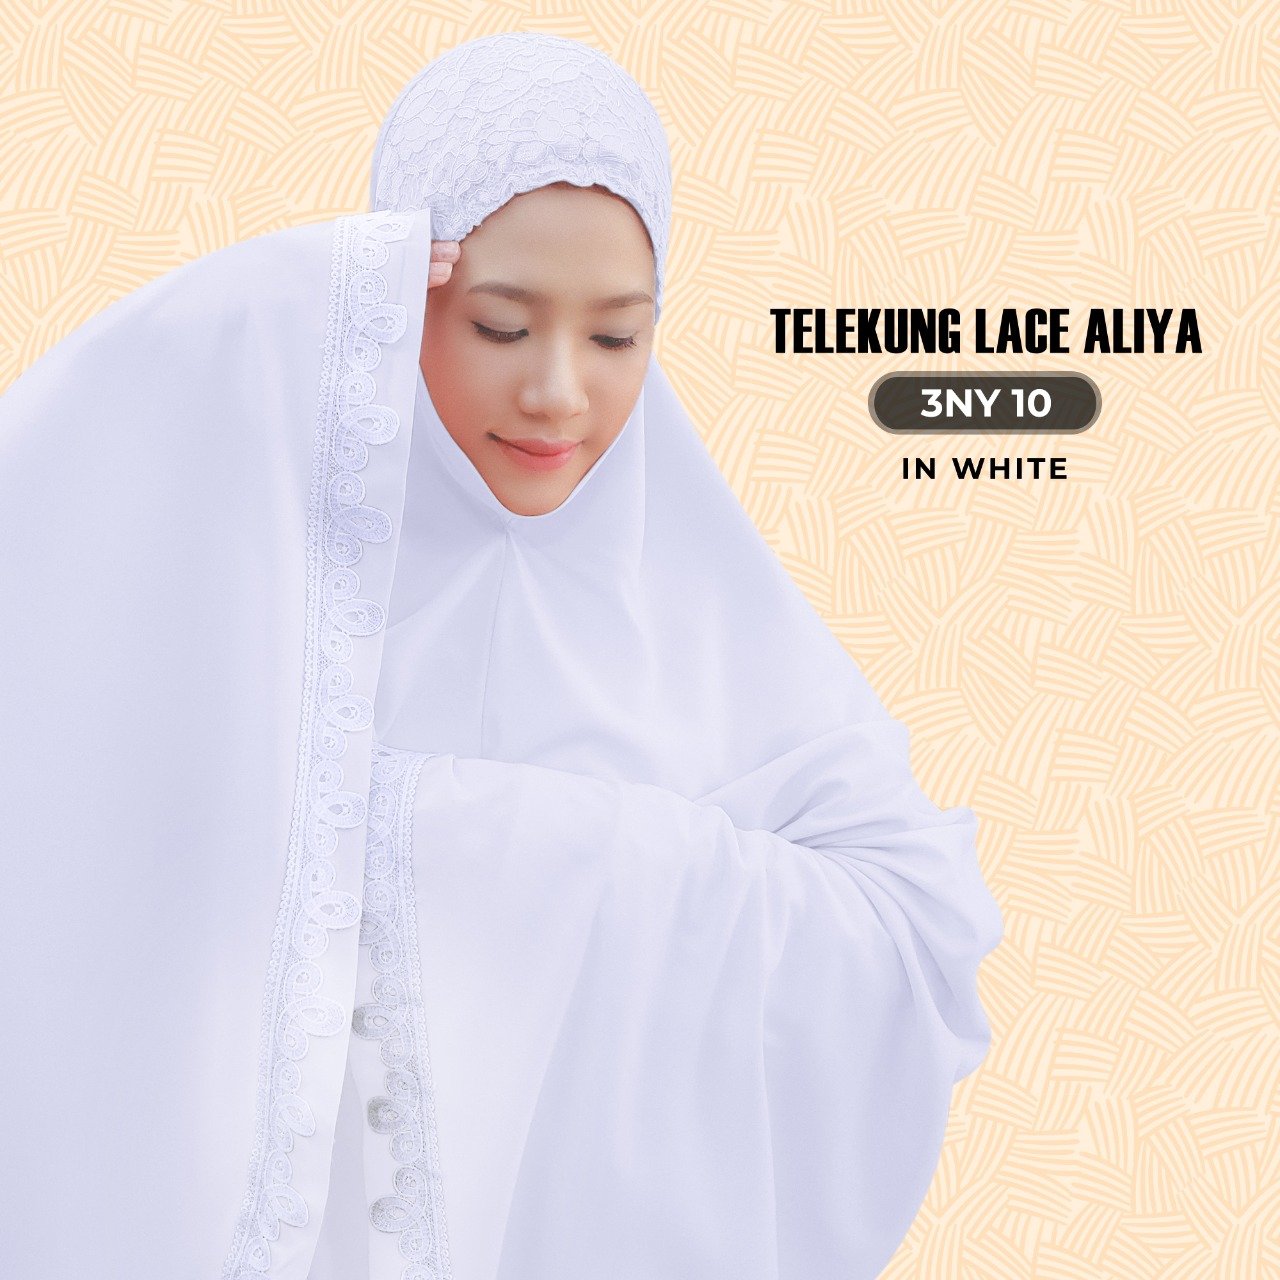 SARONY Telekung Lace Aliya Collection RM29